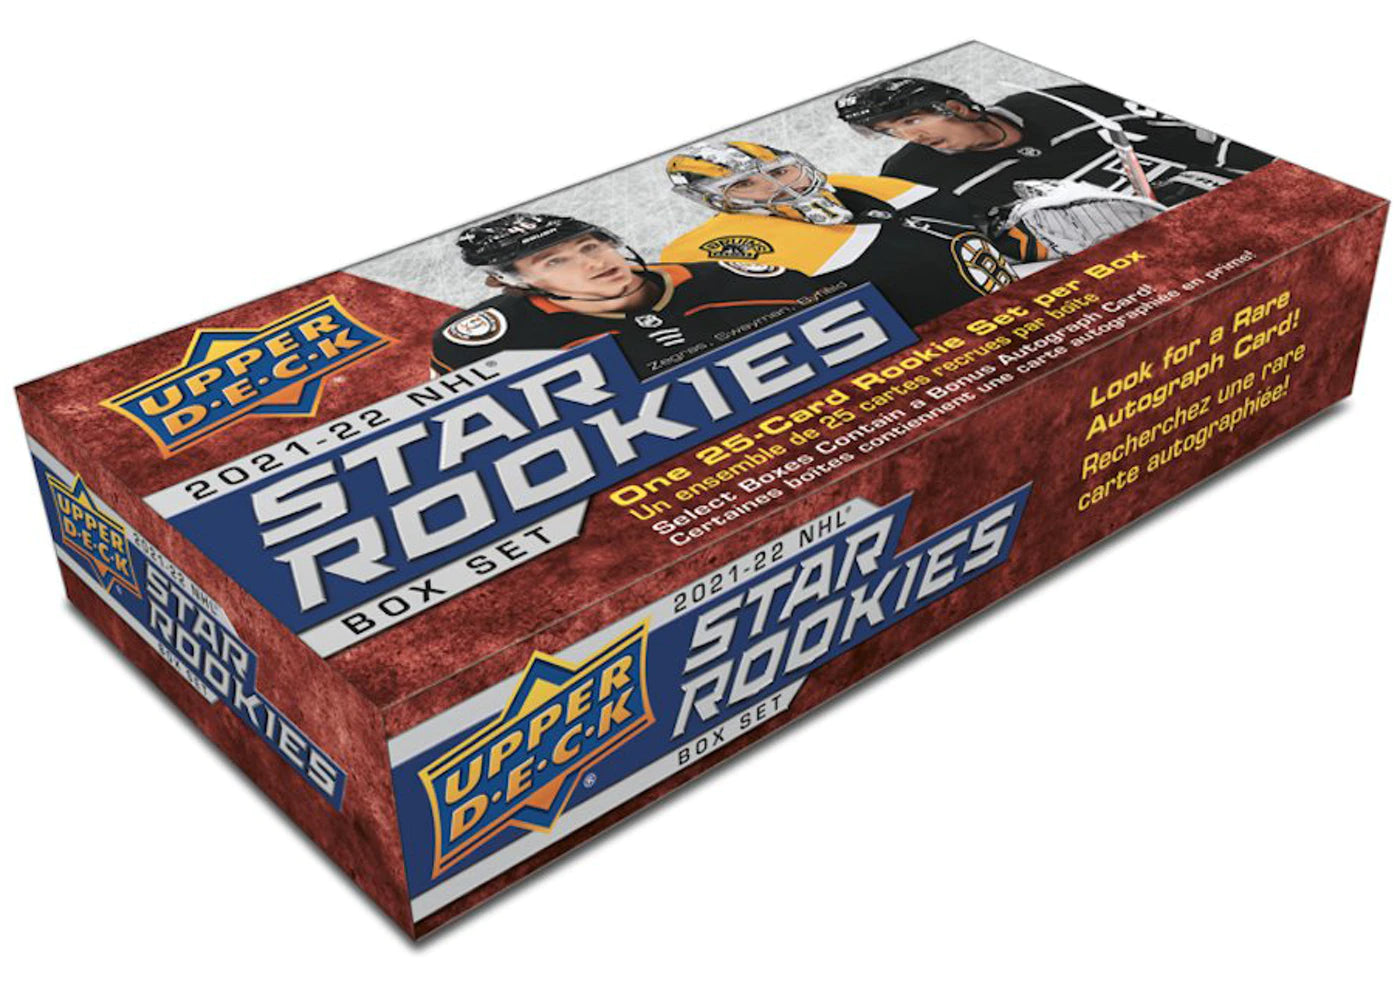 2021-22 UPPER DECK NHL STAR ROOKIES BOX SET